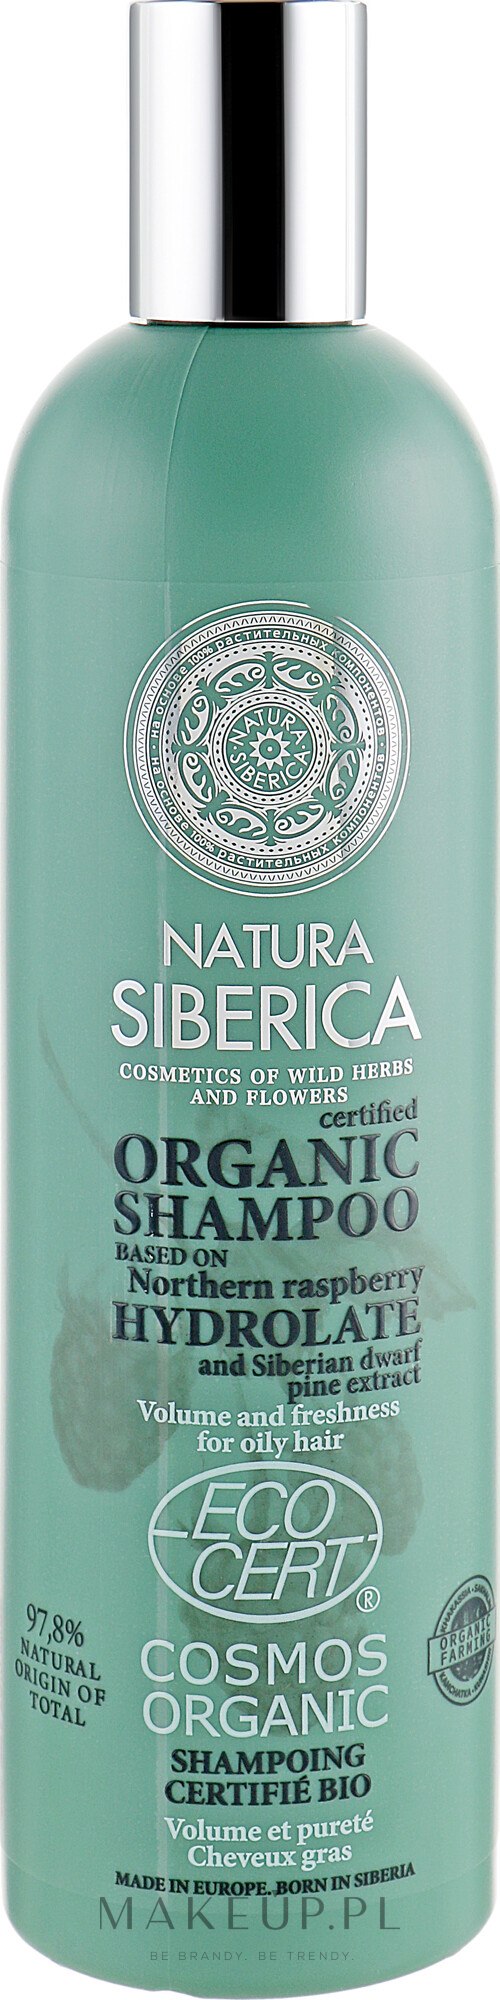 natura siberica szampon nawilżający wizaz